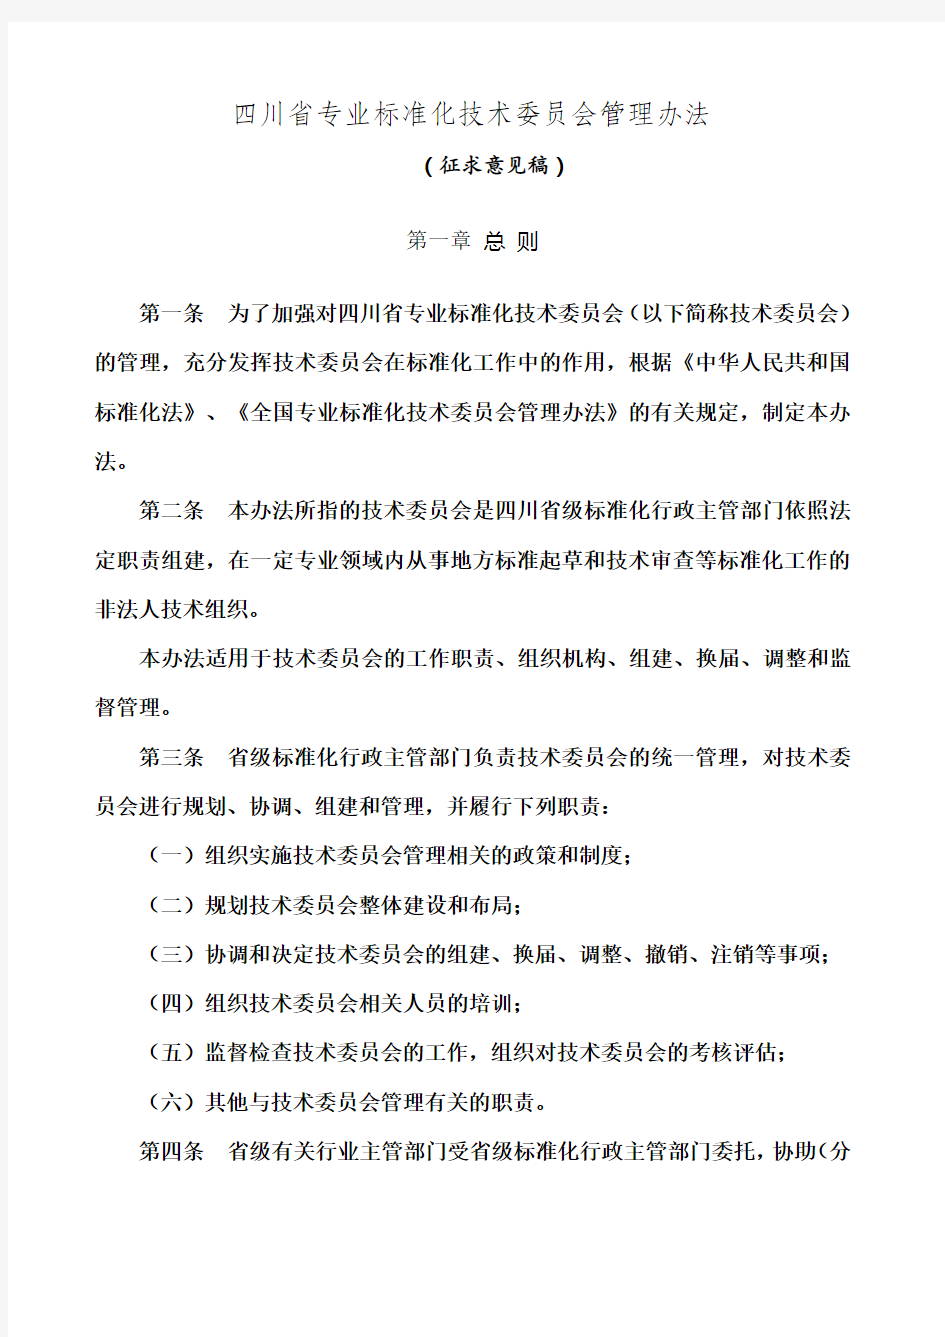 四川省专业标准化技术委员会管理办法